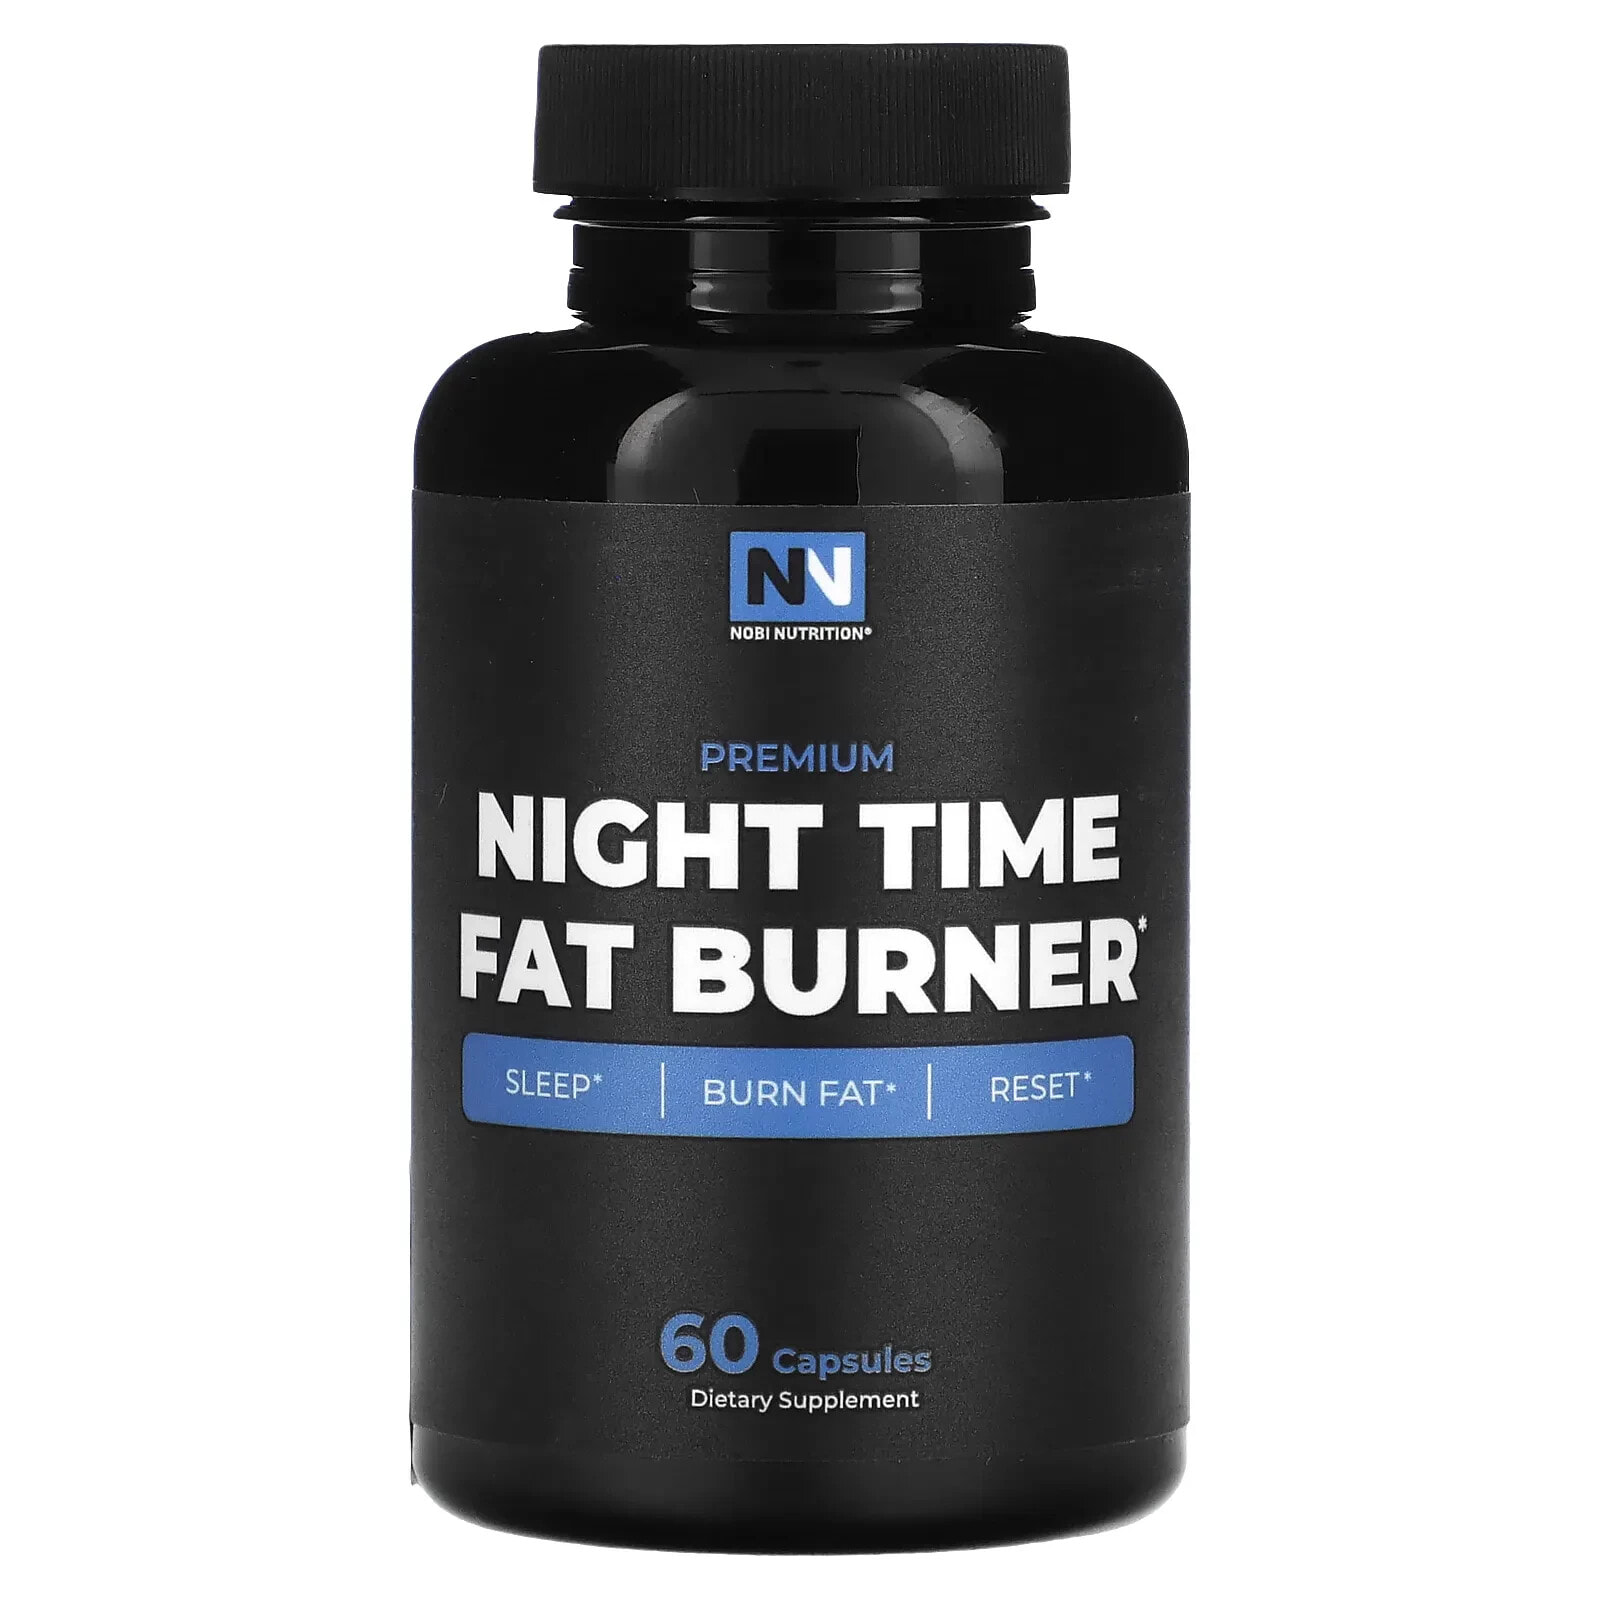 Premium Night Time Fat Burner, 60 Capsules